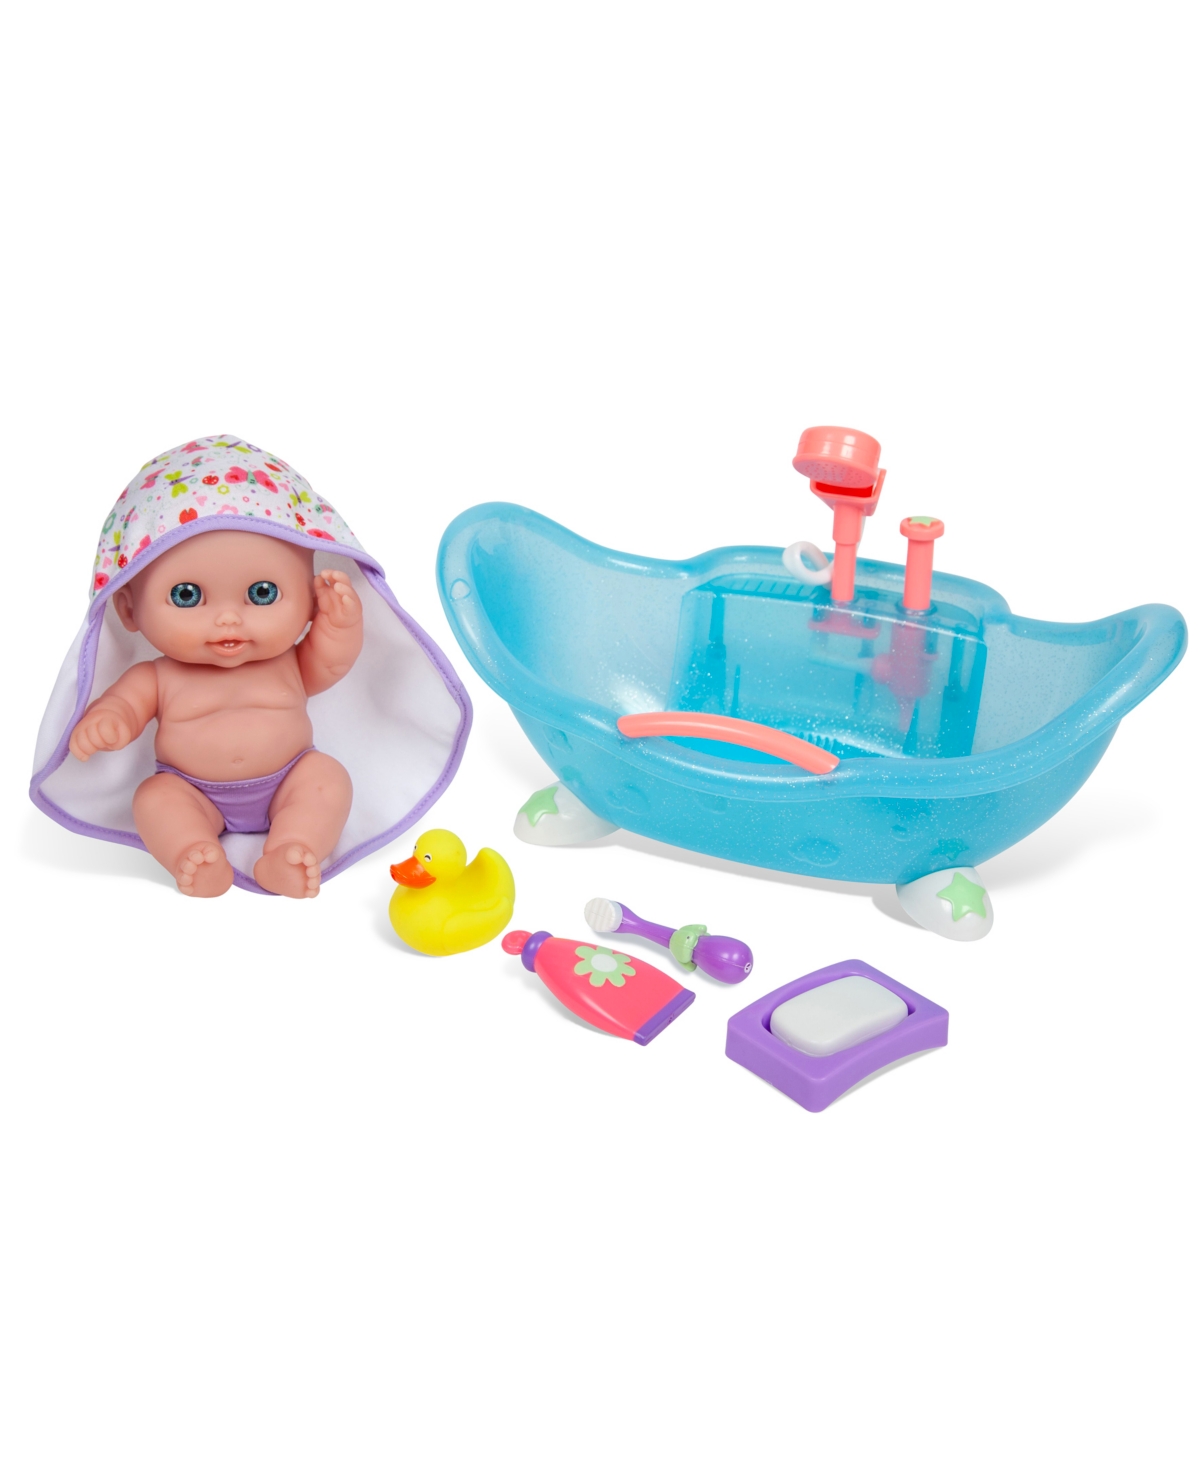 Jc Toys Lil' Cutesies 8.5" All Vinyl Doll Real Working Bath Set In Bathtub - Blue